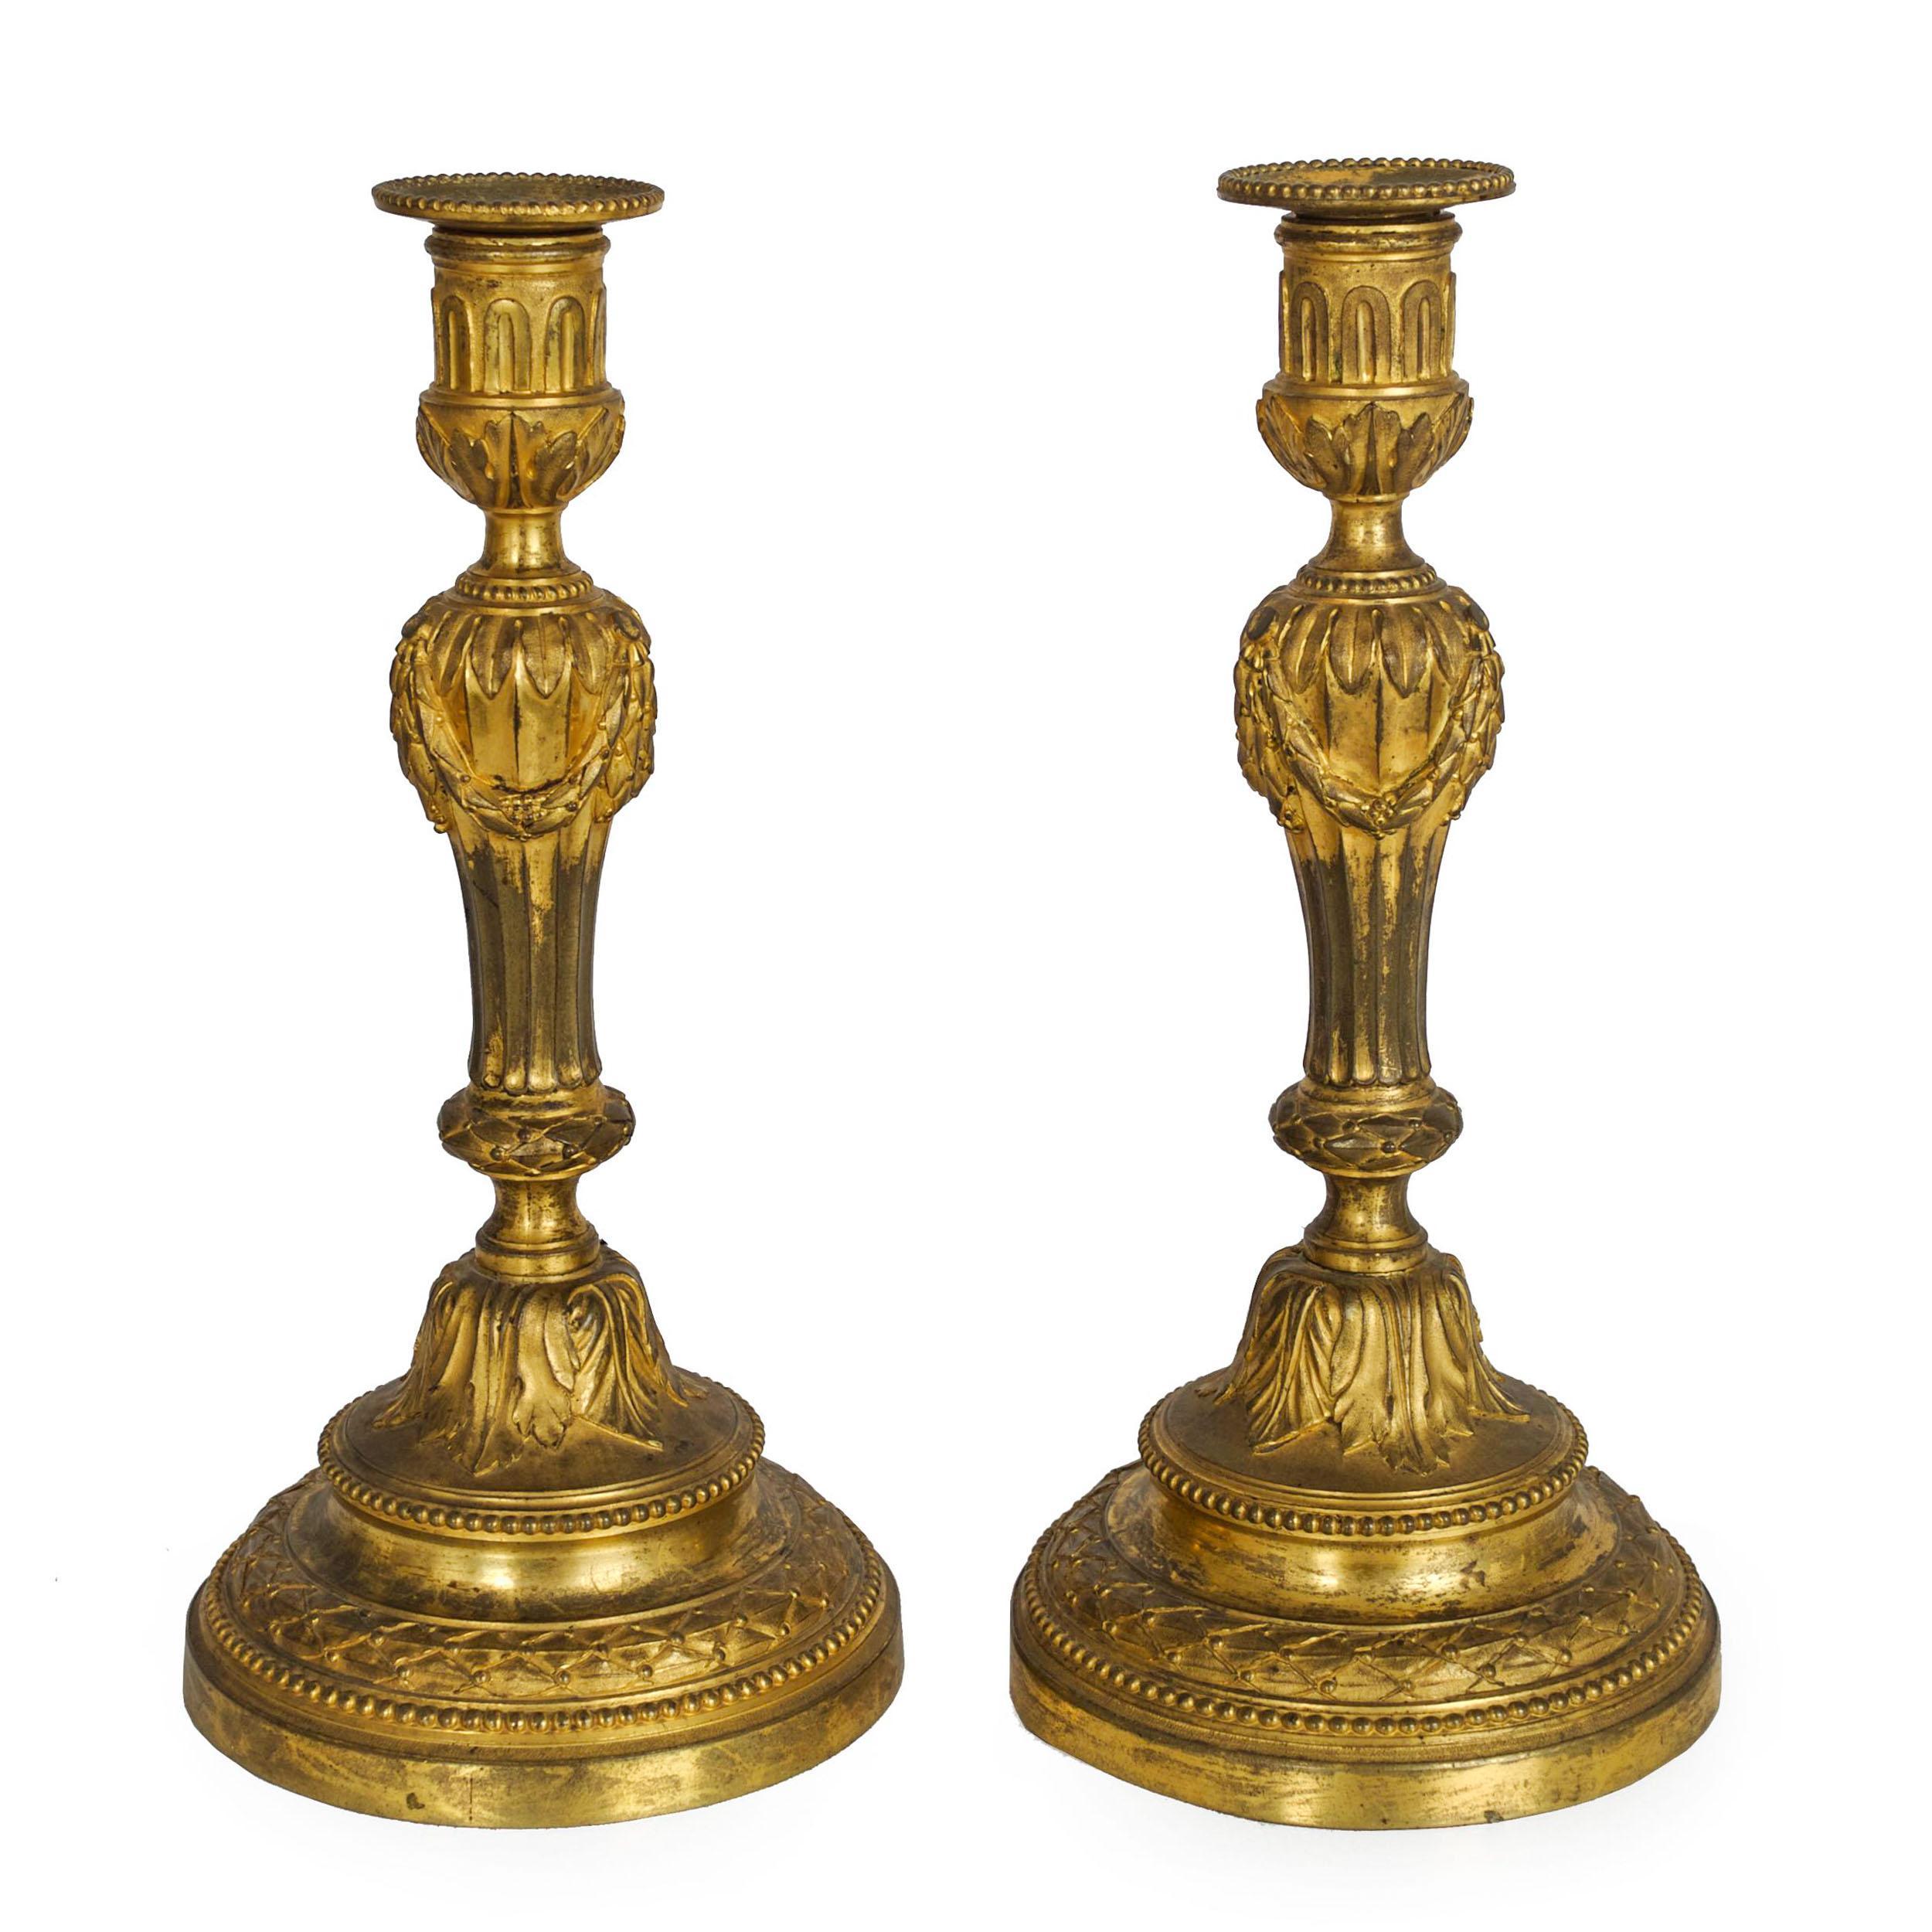 Seltenes Paar Ormolu-Leuchter aus der Zeit Ludwigs XVI., Frankreich, um 1770
Artikel Nr. C1040271

Ein unglaublich feines Paar Ormolu-Bronze-Leuchter aus der Collection'S Wildenstein. Sie haben einen kannelierten Balusterschaft, der mit